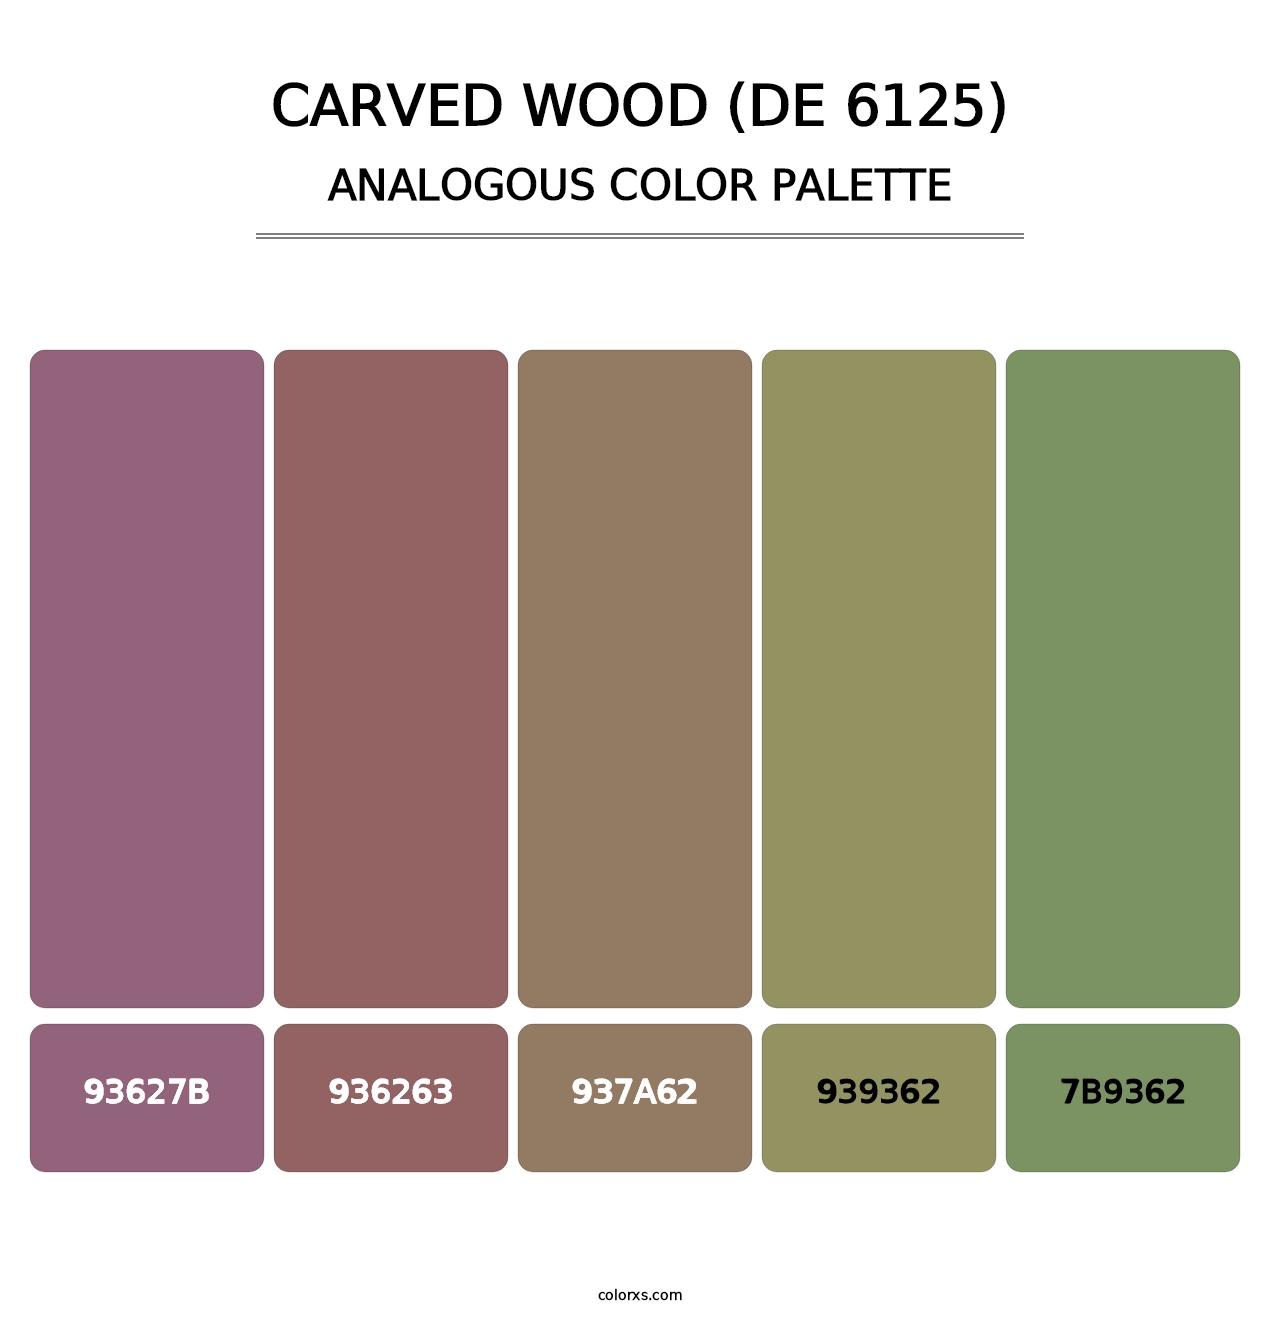 Carved Wood (DE 6125) - Analogous Color Palette